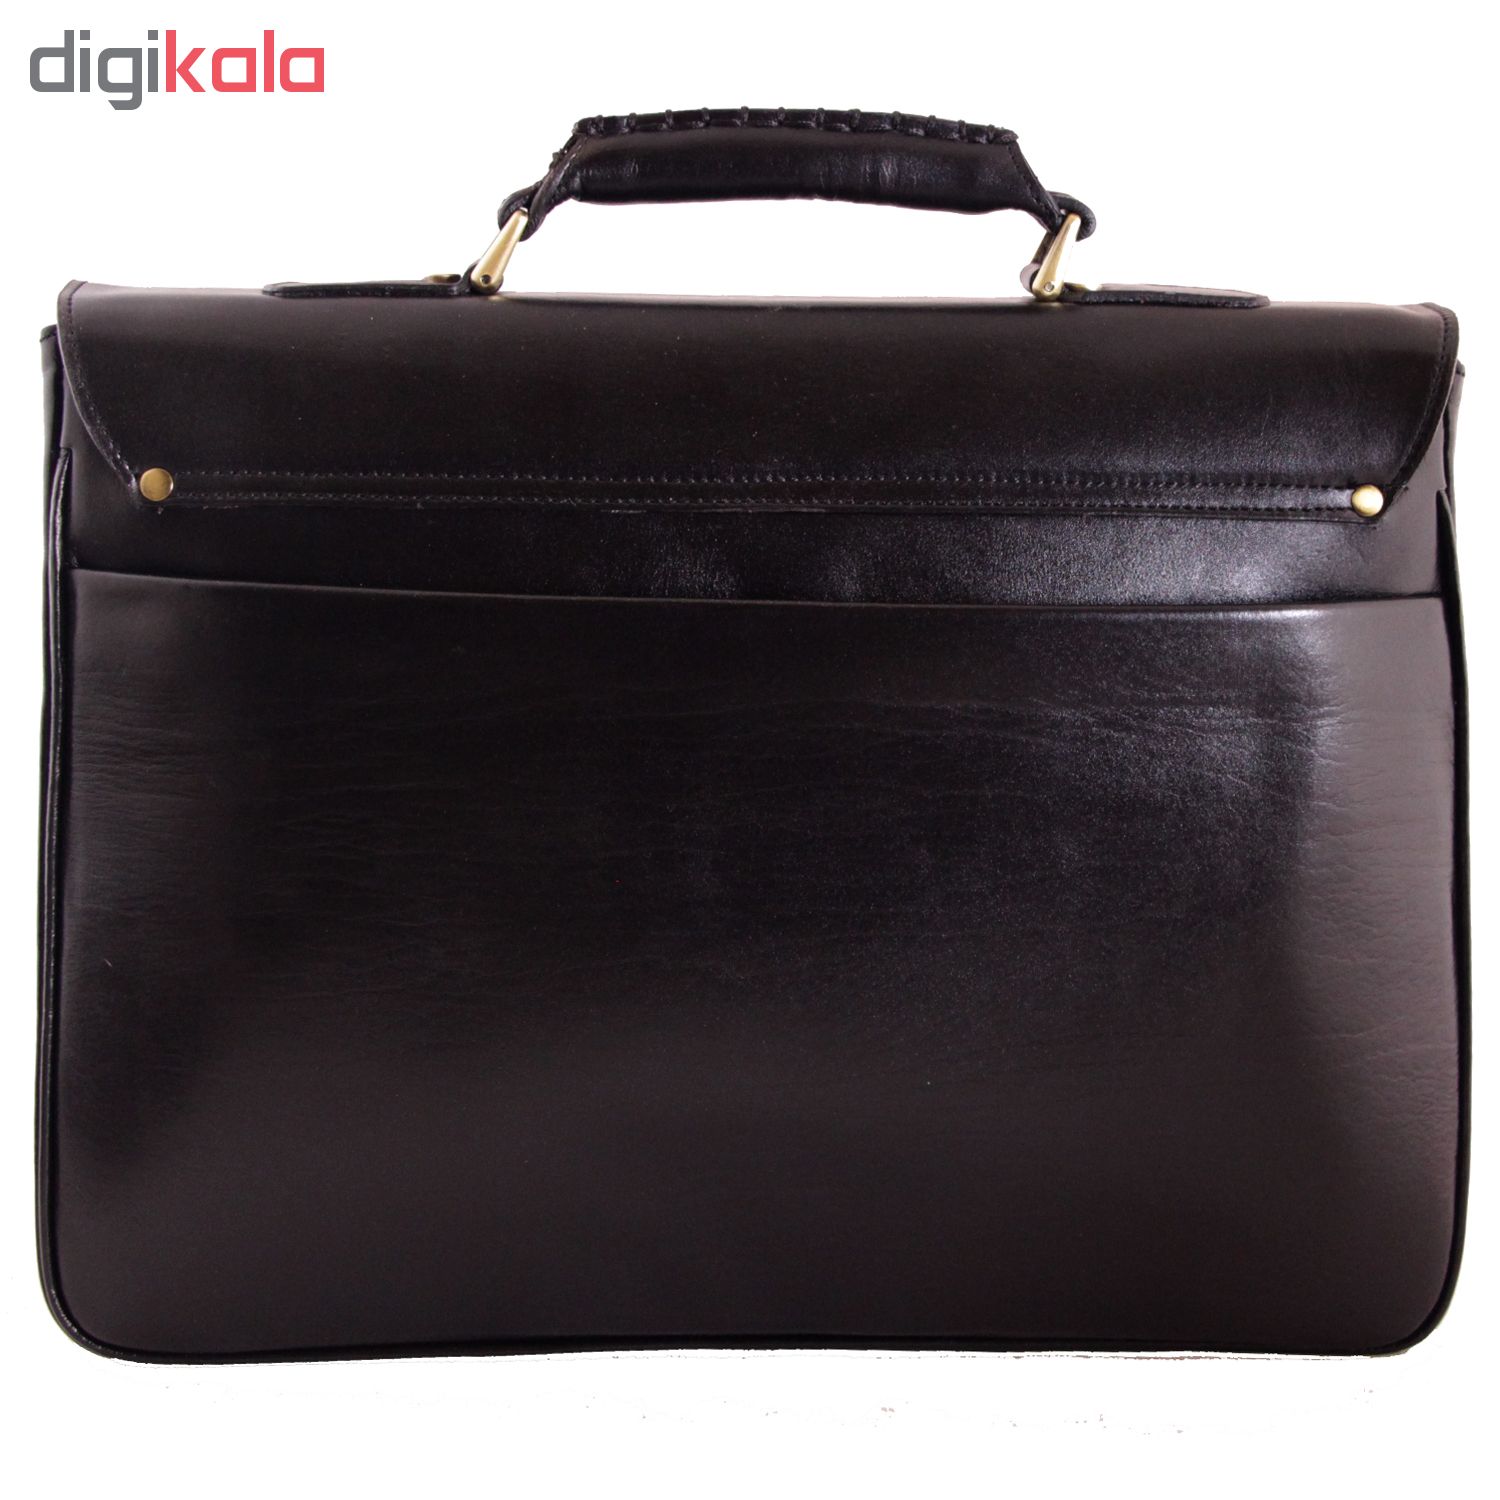 ADINCHARM natural leather office bag, DL4 Model